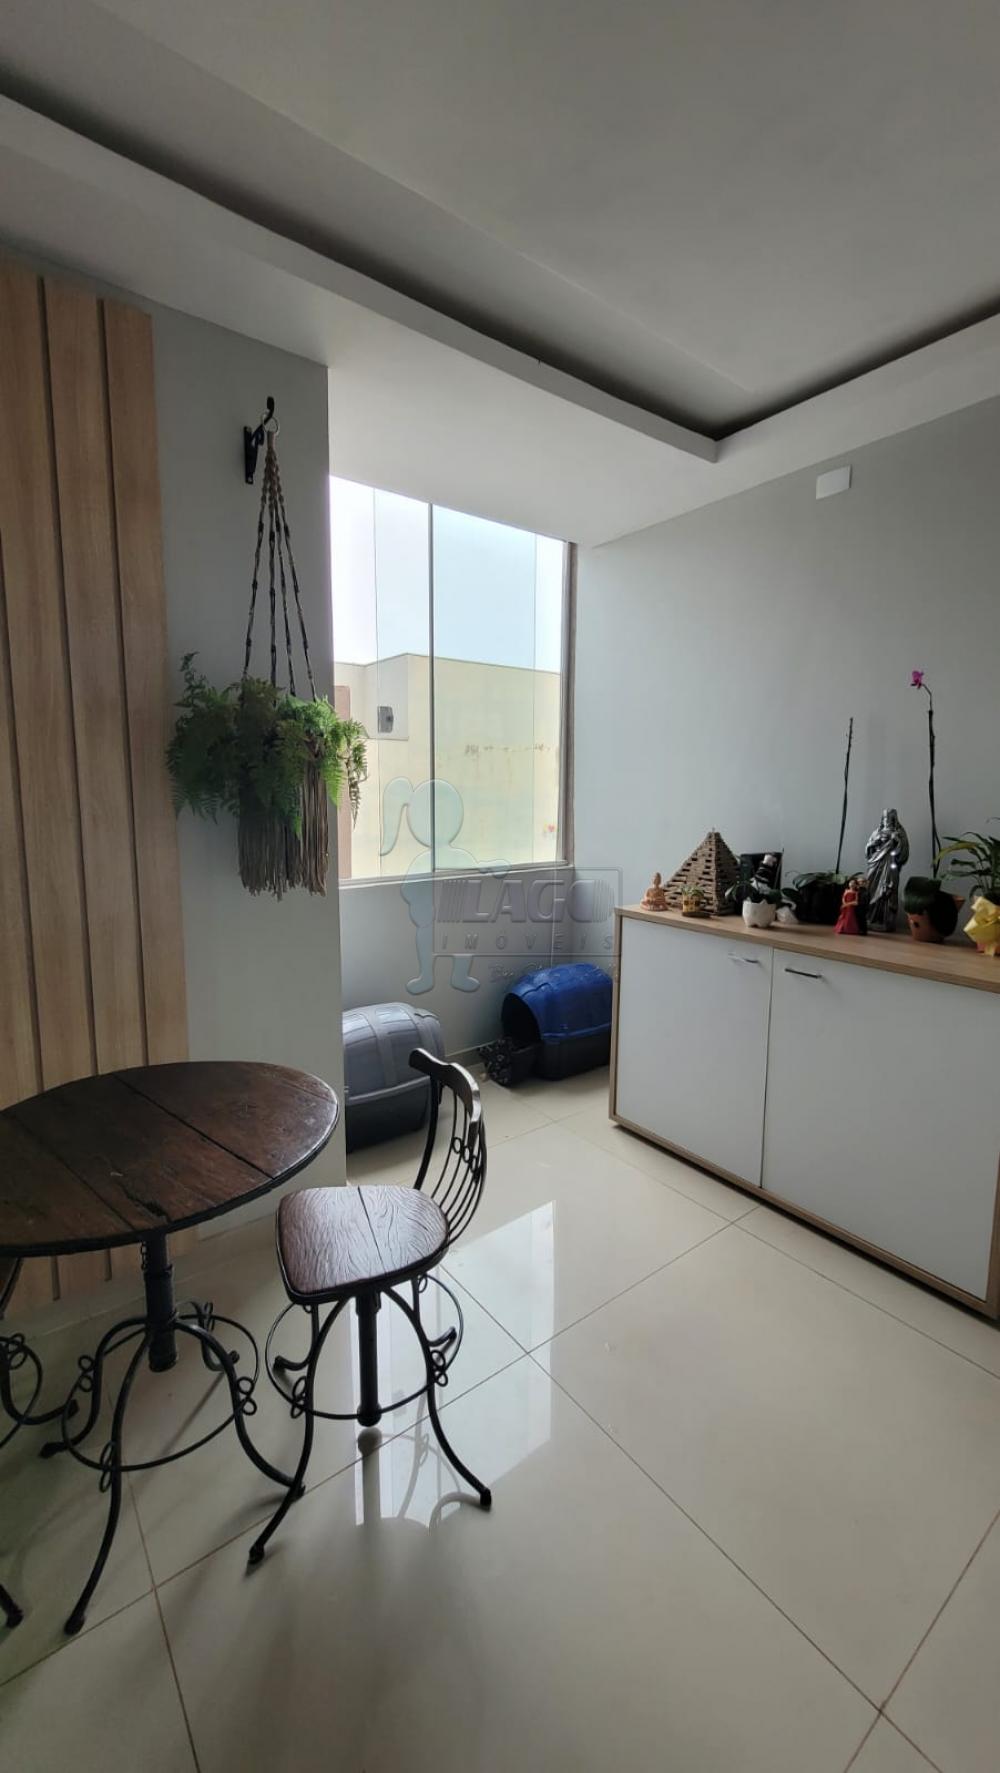 Comprar Apartamento / Padrão em Ribeirão Preto R$ 330.000,00 - Foto 3